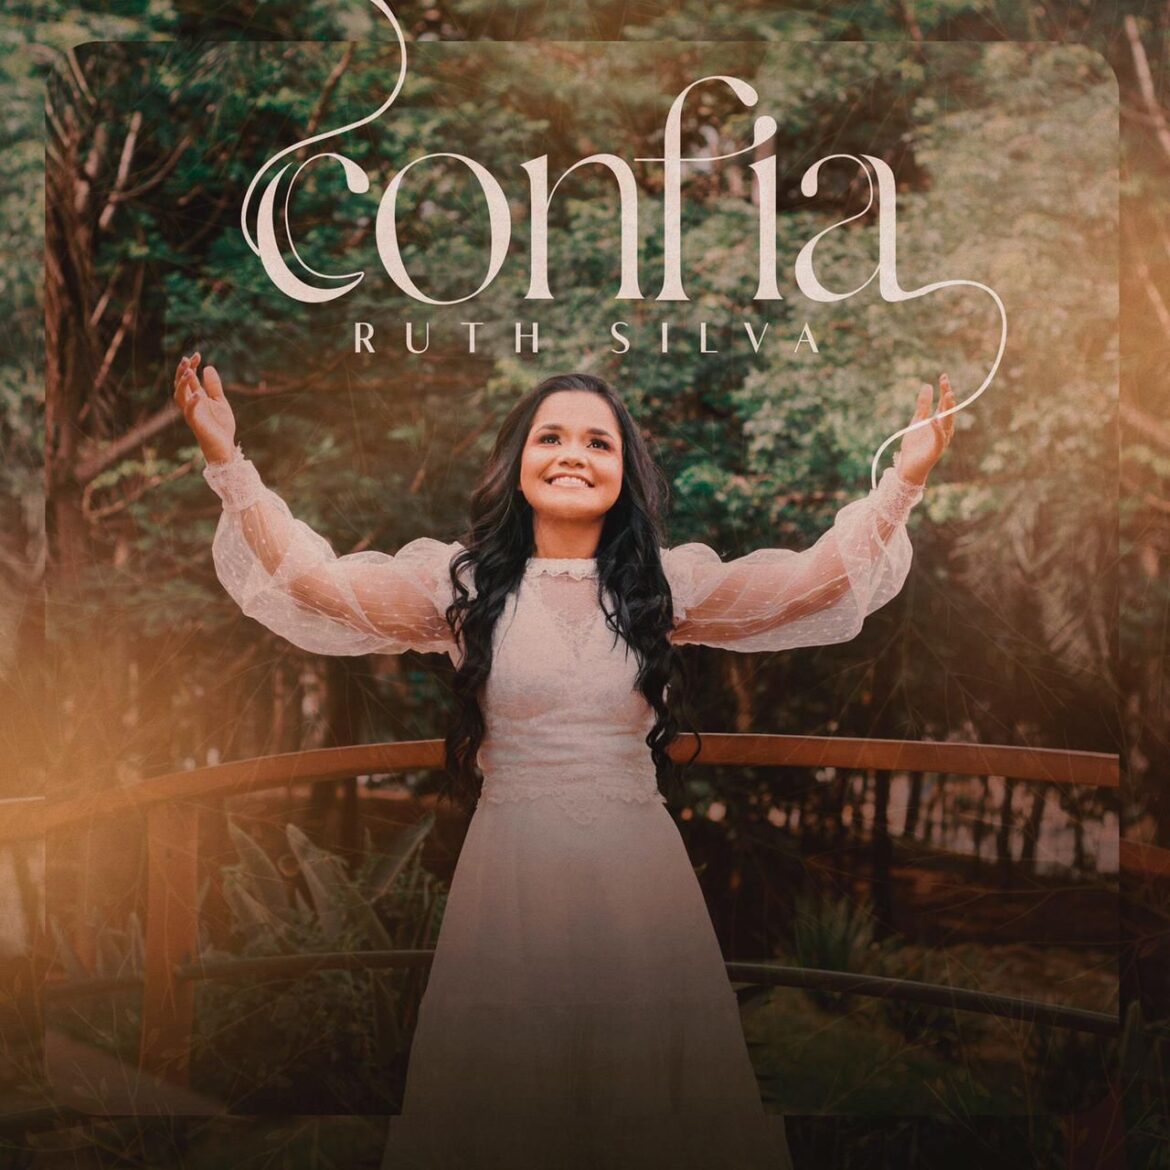 Ruth Silva lança “Confia”, uma canção sobre depositar a nossa confiança em Deus